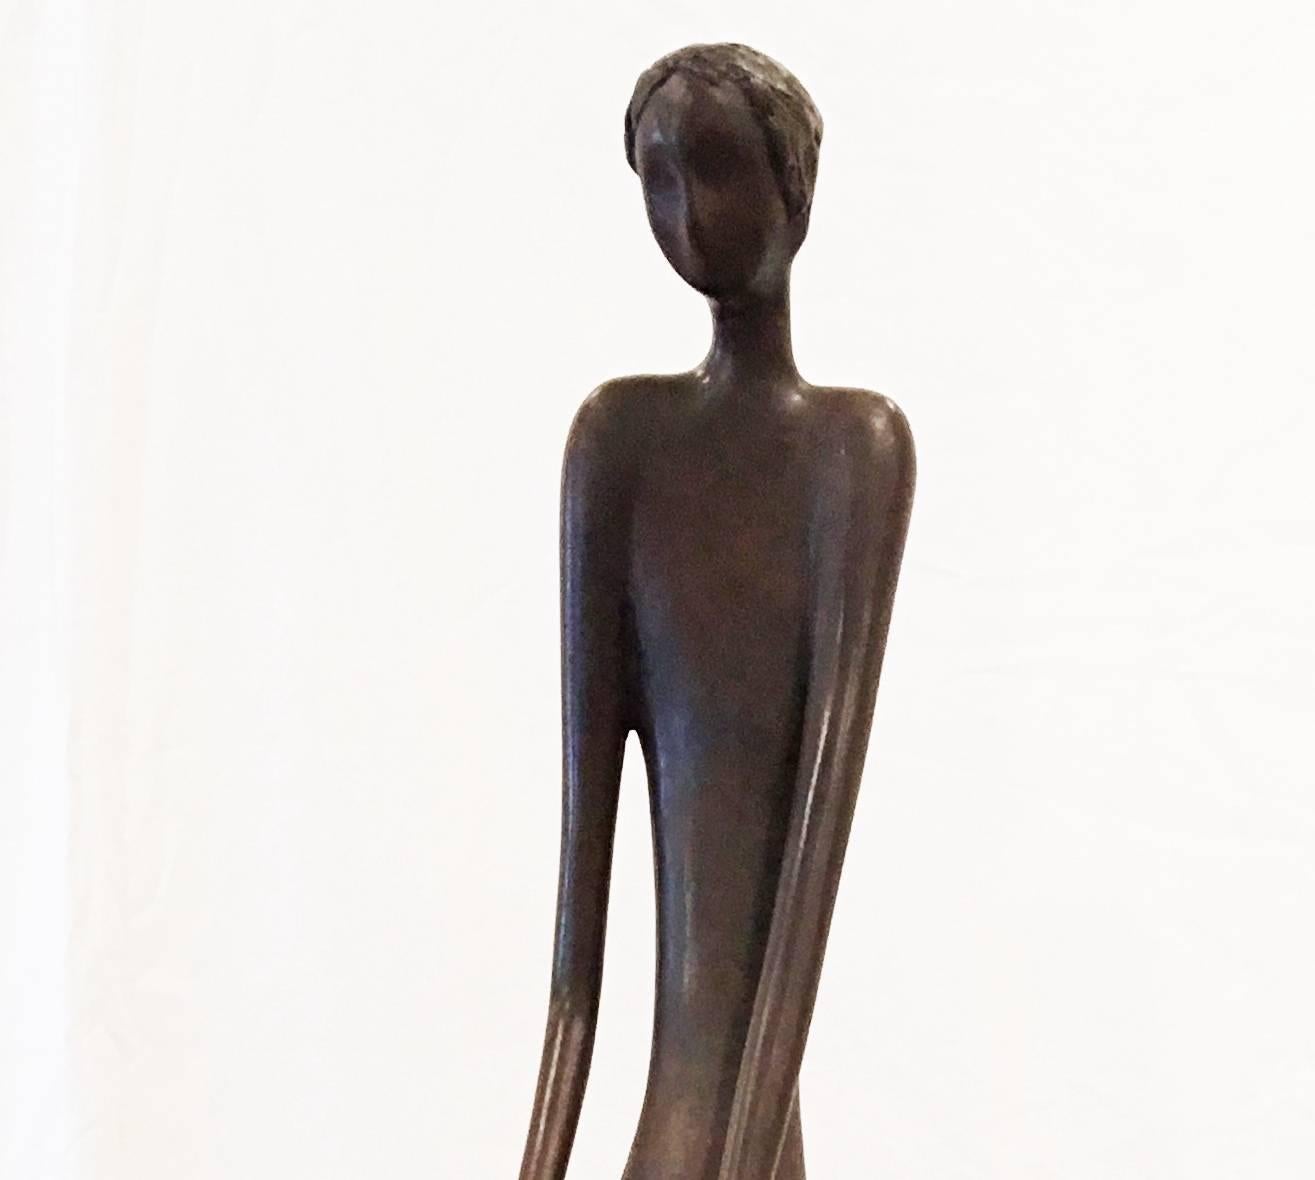 Mann auf Hocker, Bronzeskulptur – Auflage 7 von 25 Stück – Sculpture von Ruth Bloch